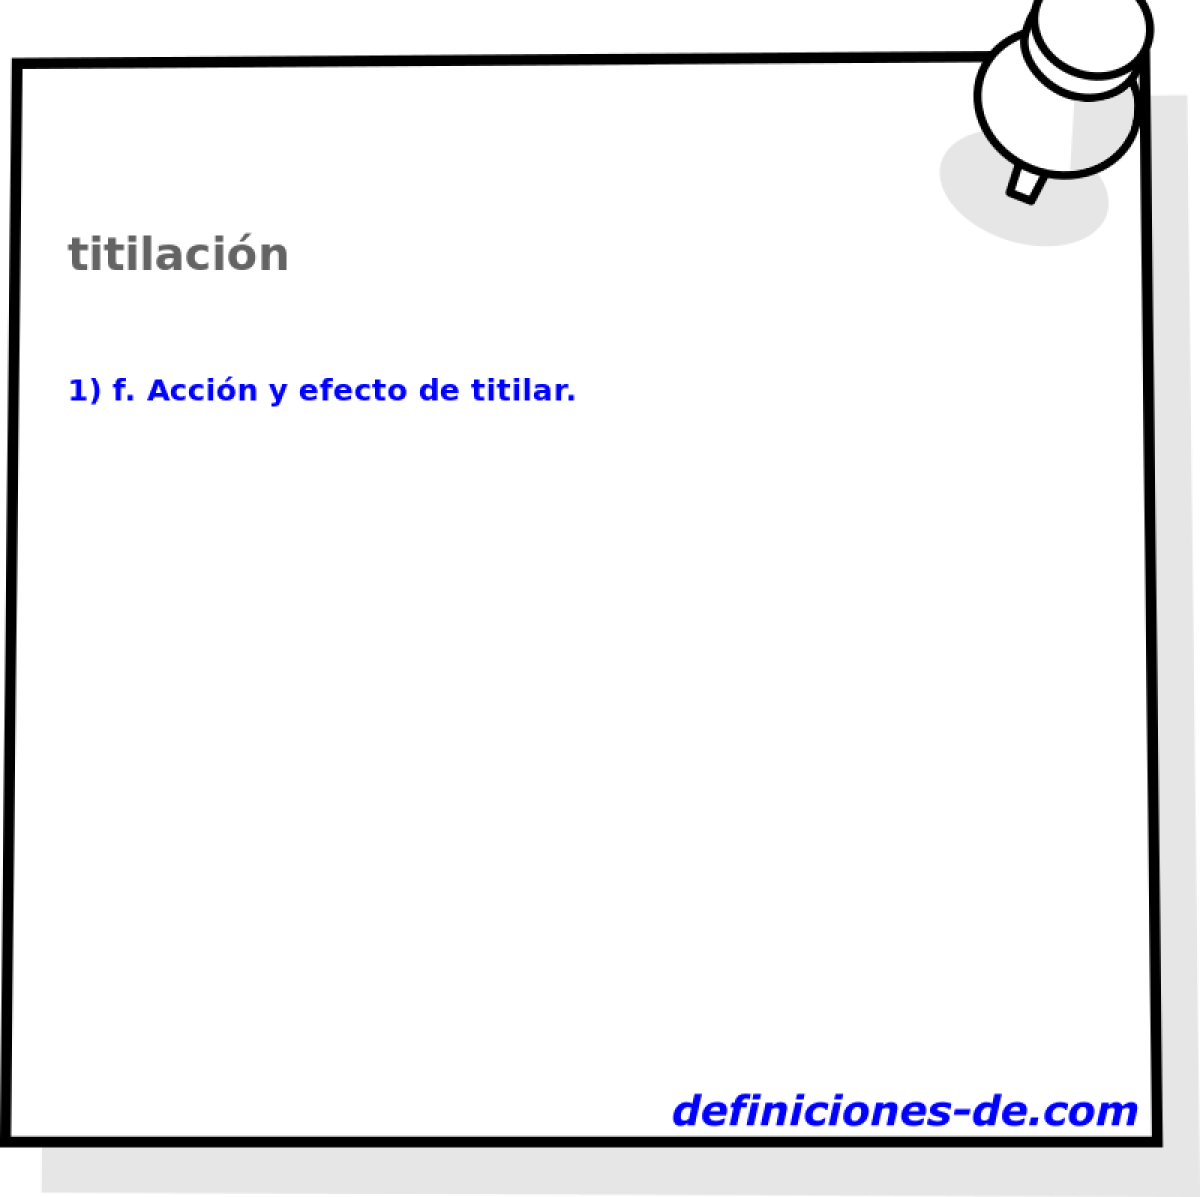 titilacin 